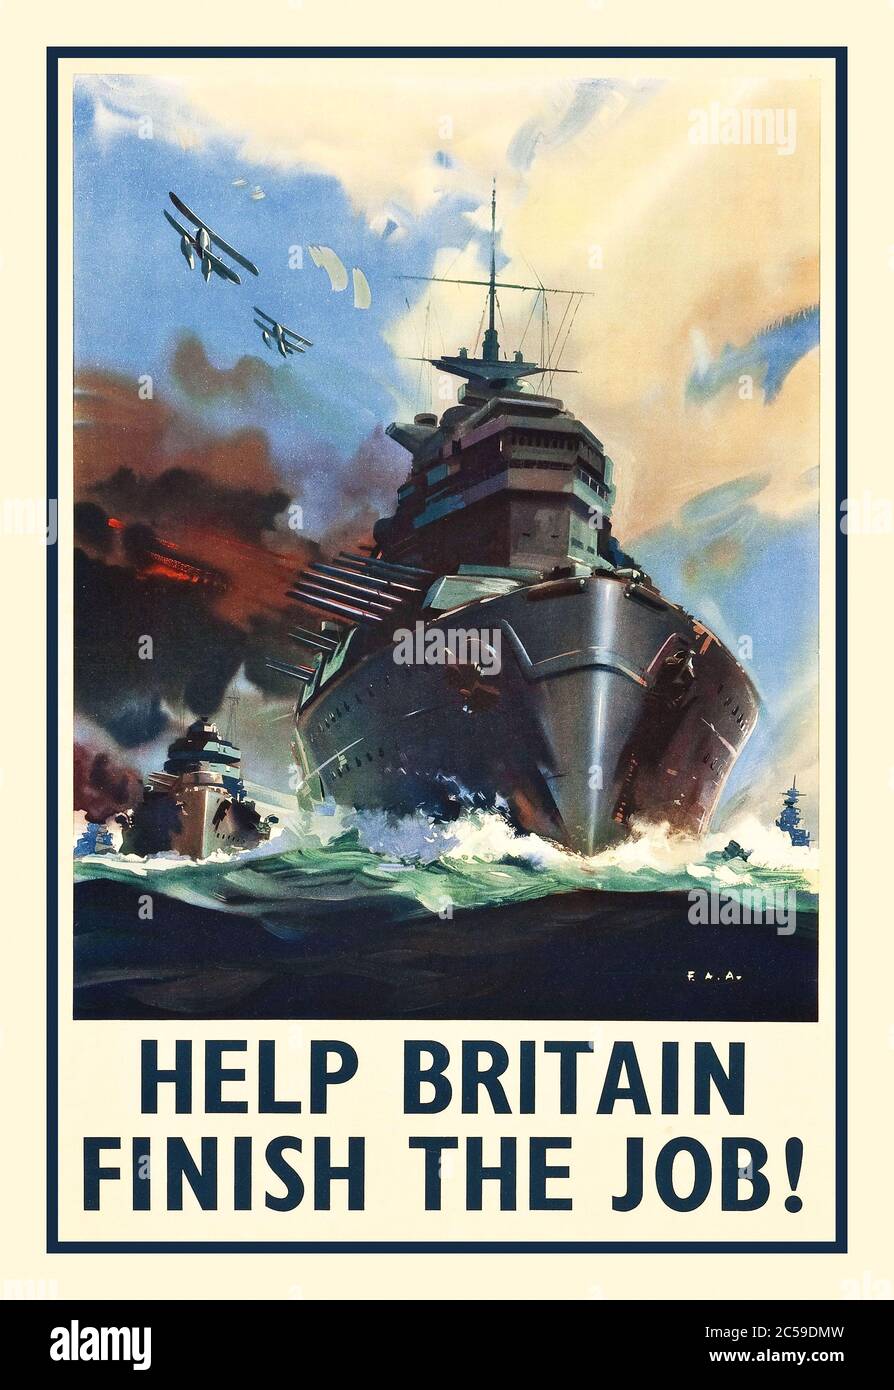 Propaganda-Rekrutierung im Zweiten Weltkrieg (1940er Jahre). British Naval Poster 'Hilf Großbritannien, den Job zu beenden.' Schlachtschiffe teilen die Meere, als Begleitflugzeuge auf diesem Plakat aus dem 2. Weltkrieg über die Meere ragen, um potenzielle Rekruten zu inspirieren, sich dem Kampf anzuschließen und 'Hilf Großbritannien, den Krieg zu beenden'. Stockfoto